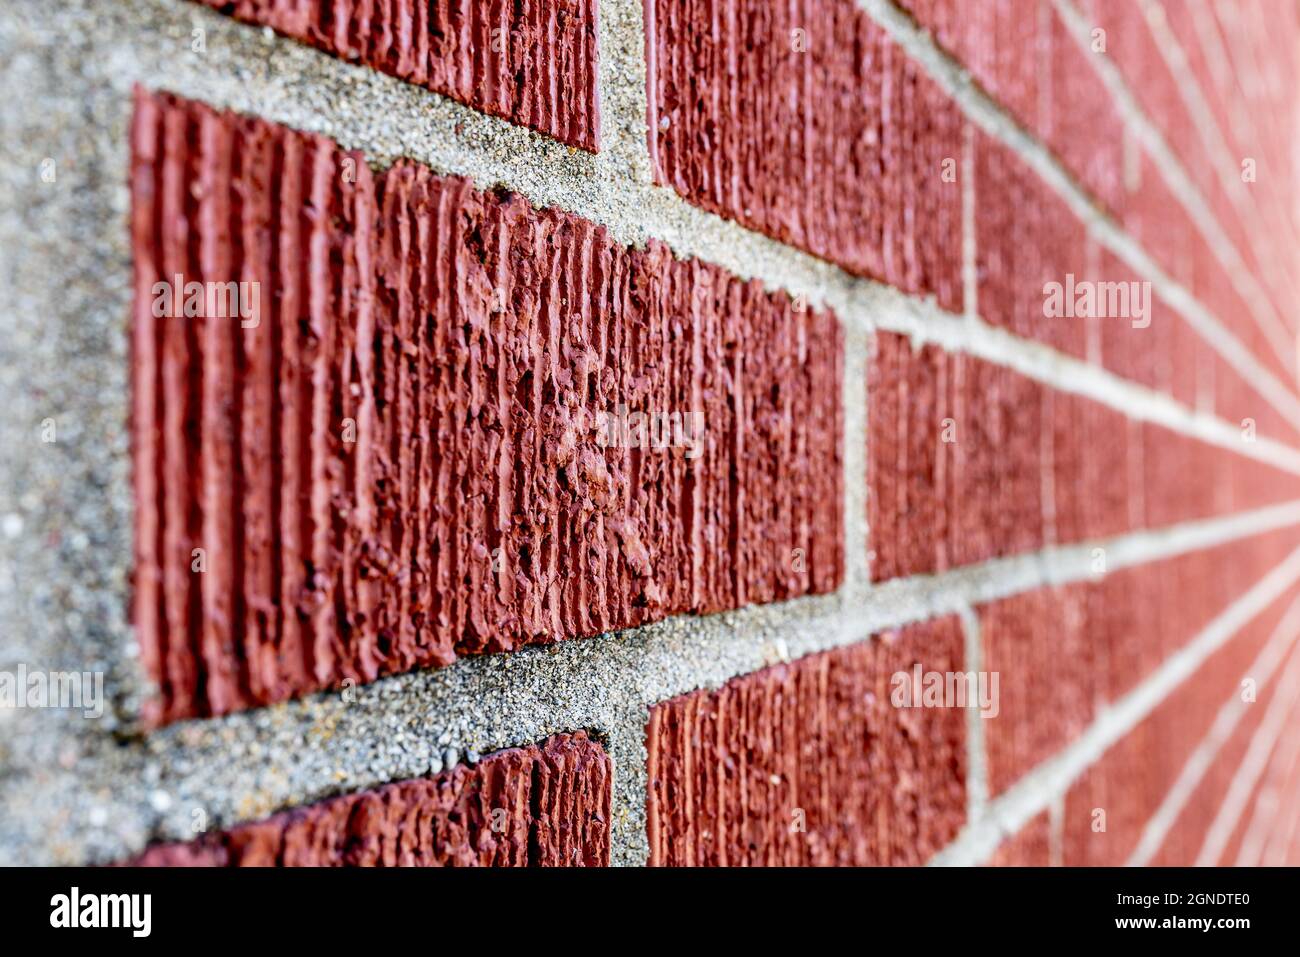 Gros plan d'un mur de briques rouges avec des lignes de coulis grises. Prise de vue avec une faible profondeur de champ et un objectif grand angle créant un arrière-plan flou avec conve Banque D'Images